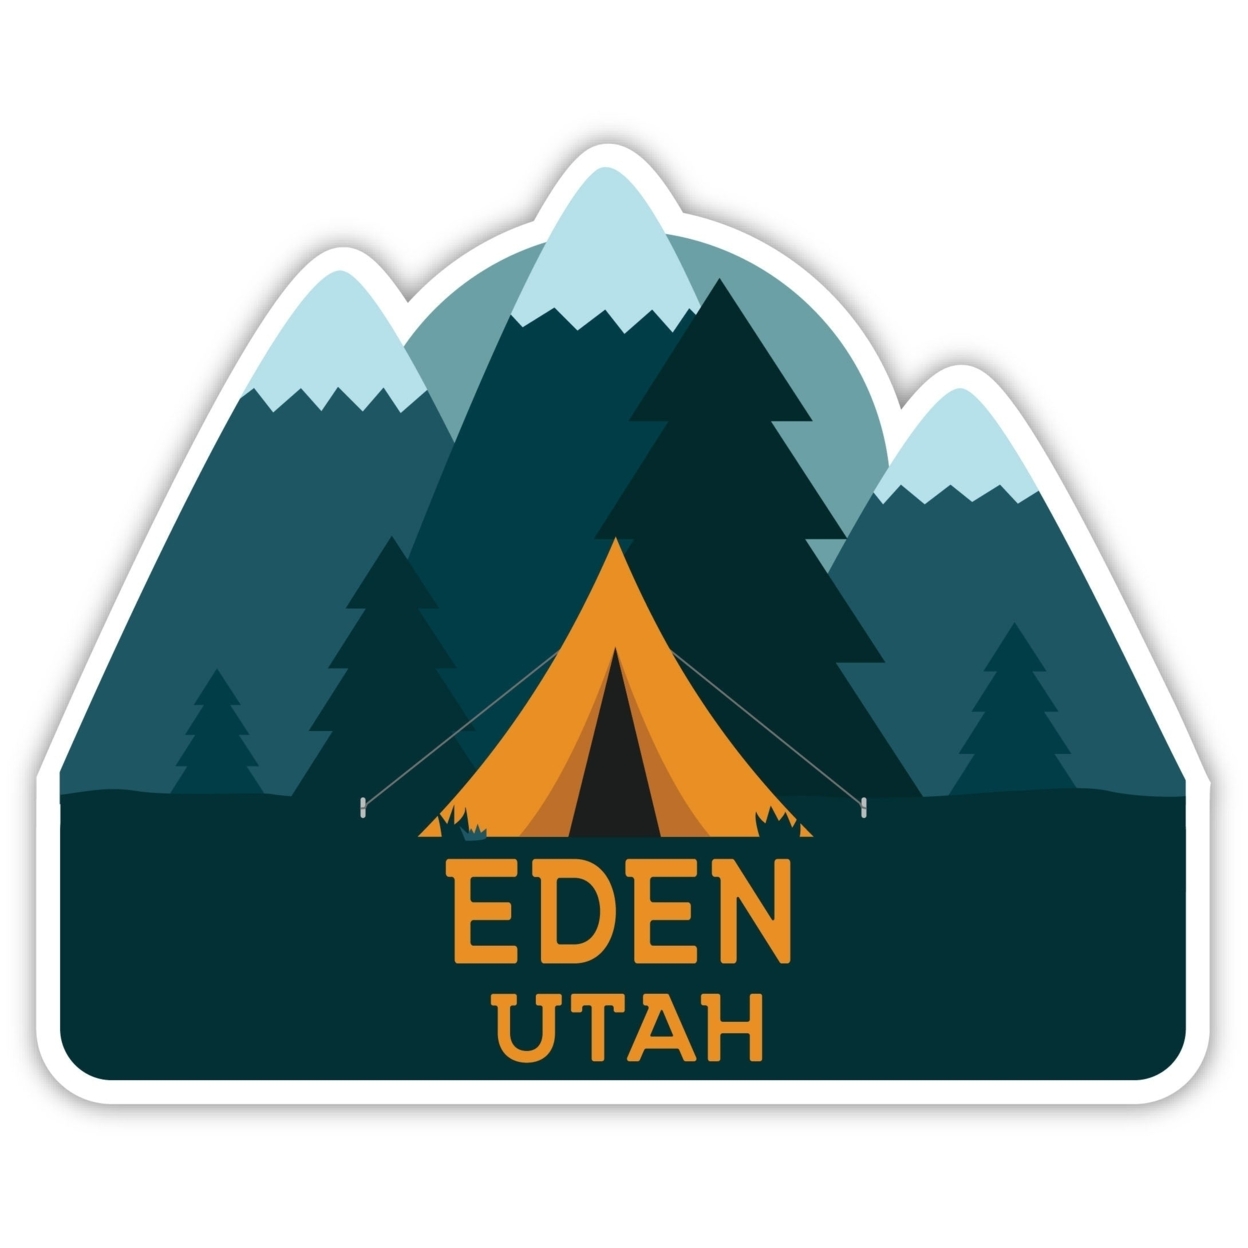 Eden Utah Souvenir Decorative Stickers (Choose Theme And Size) - Single Unit, 4-Inch, Tent